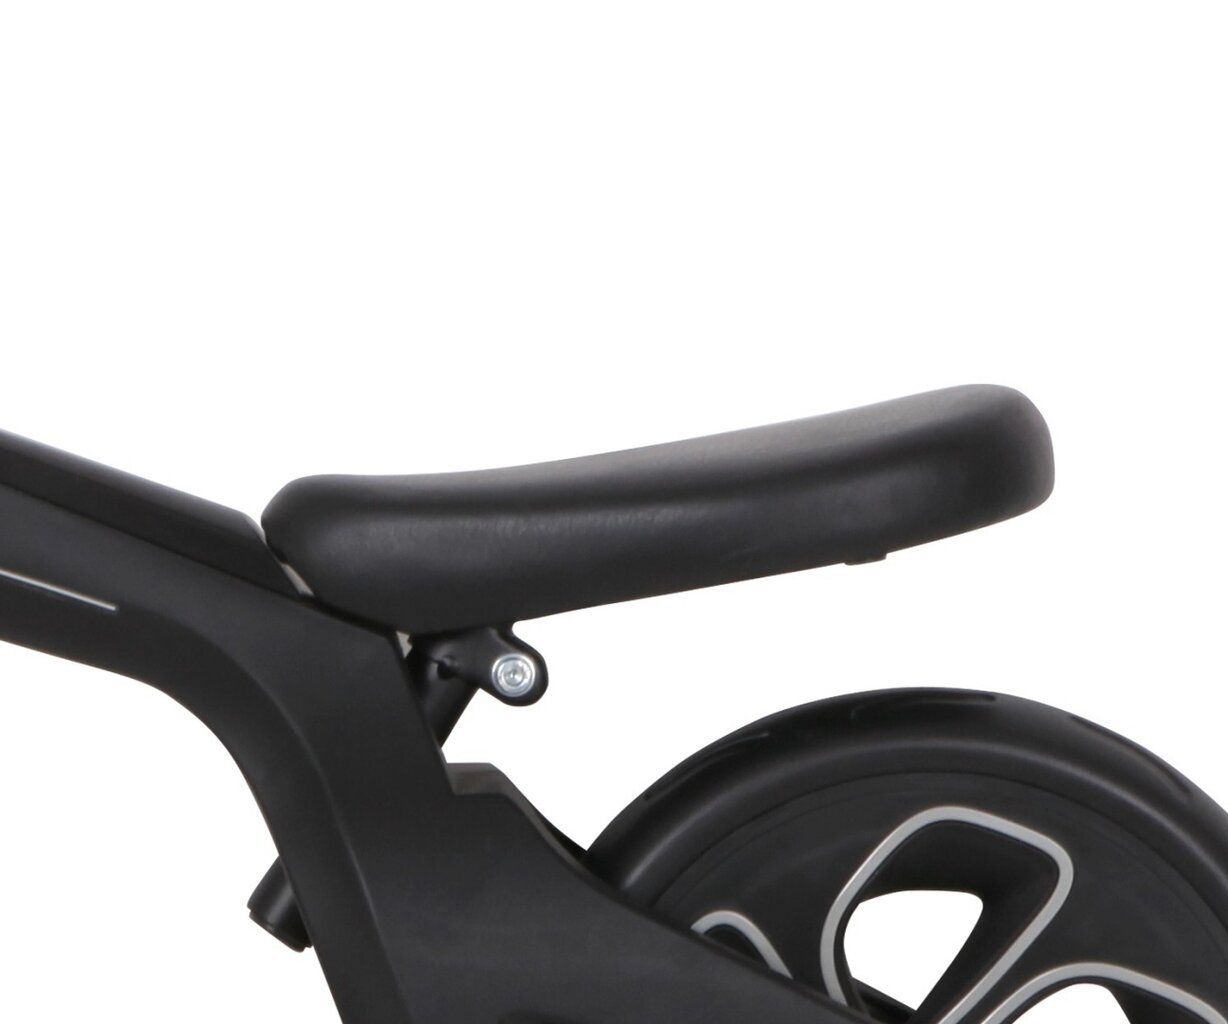 Balansinis dviratis Milly Mally Qplay Tech, juodas kaina ir informacija | Balansiniai dviratukai | pigu.lt